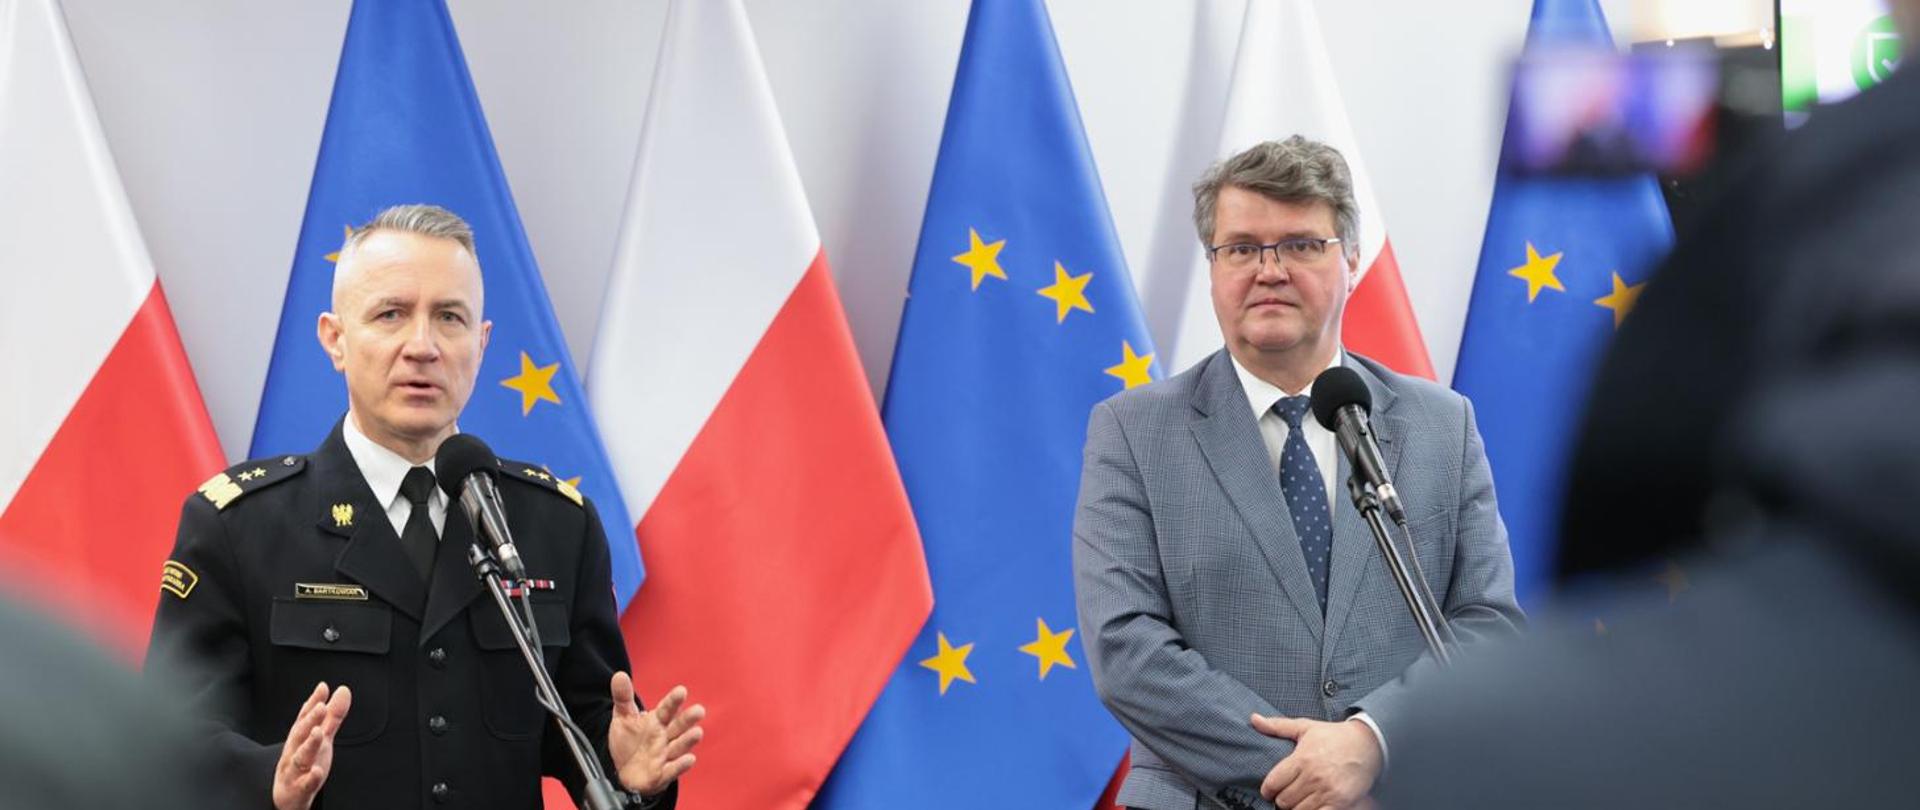 Zdjęcie przedstawia wiceministra Macieja Wąsika oraz gen. brygadiera Andrzeja Bartkowiaka komendanta głównego PSP. W tle znajdują się naprzemiennie ustawione flagi Polski i Unii Europejskiej.